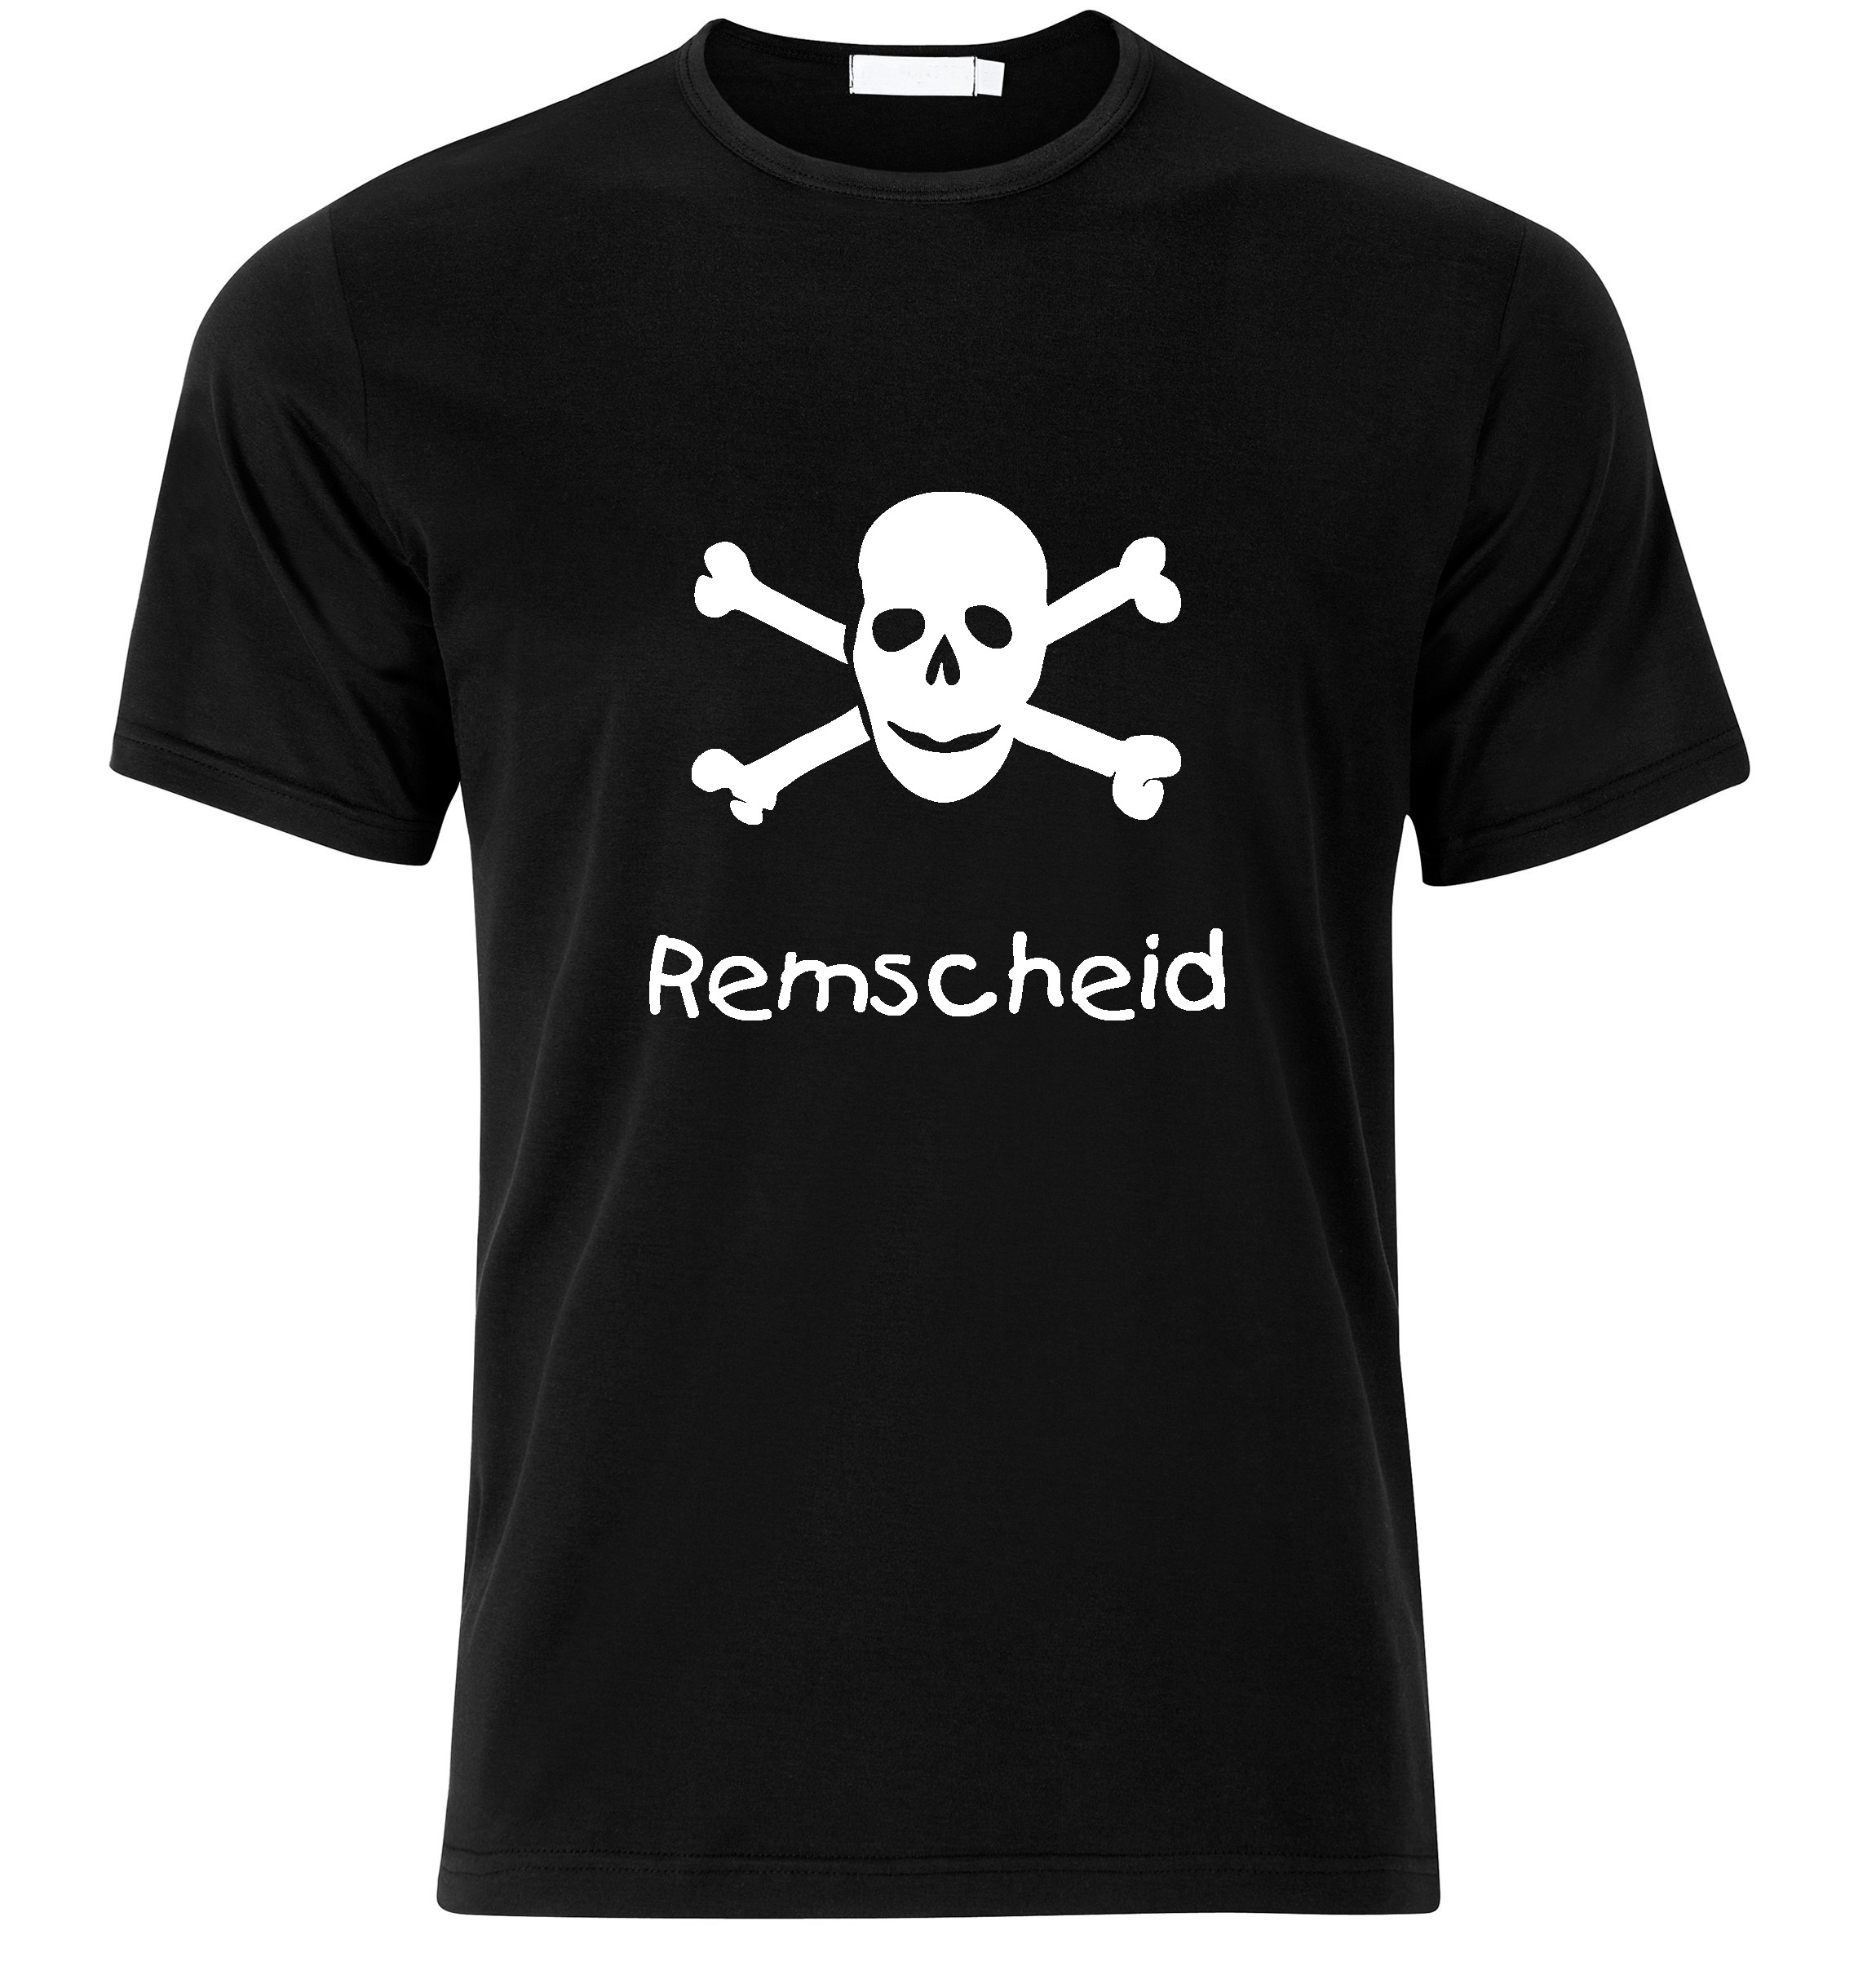 T-Shirt Remscheid Jolly Roger, Totenkopf